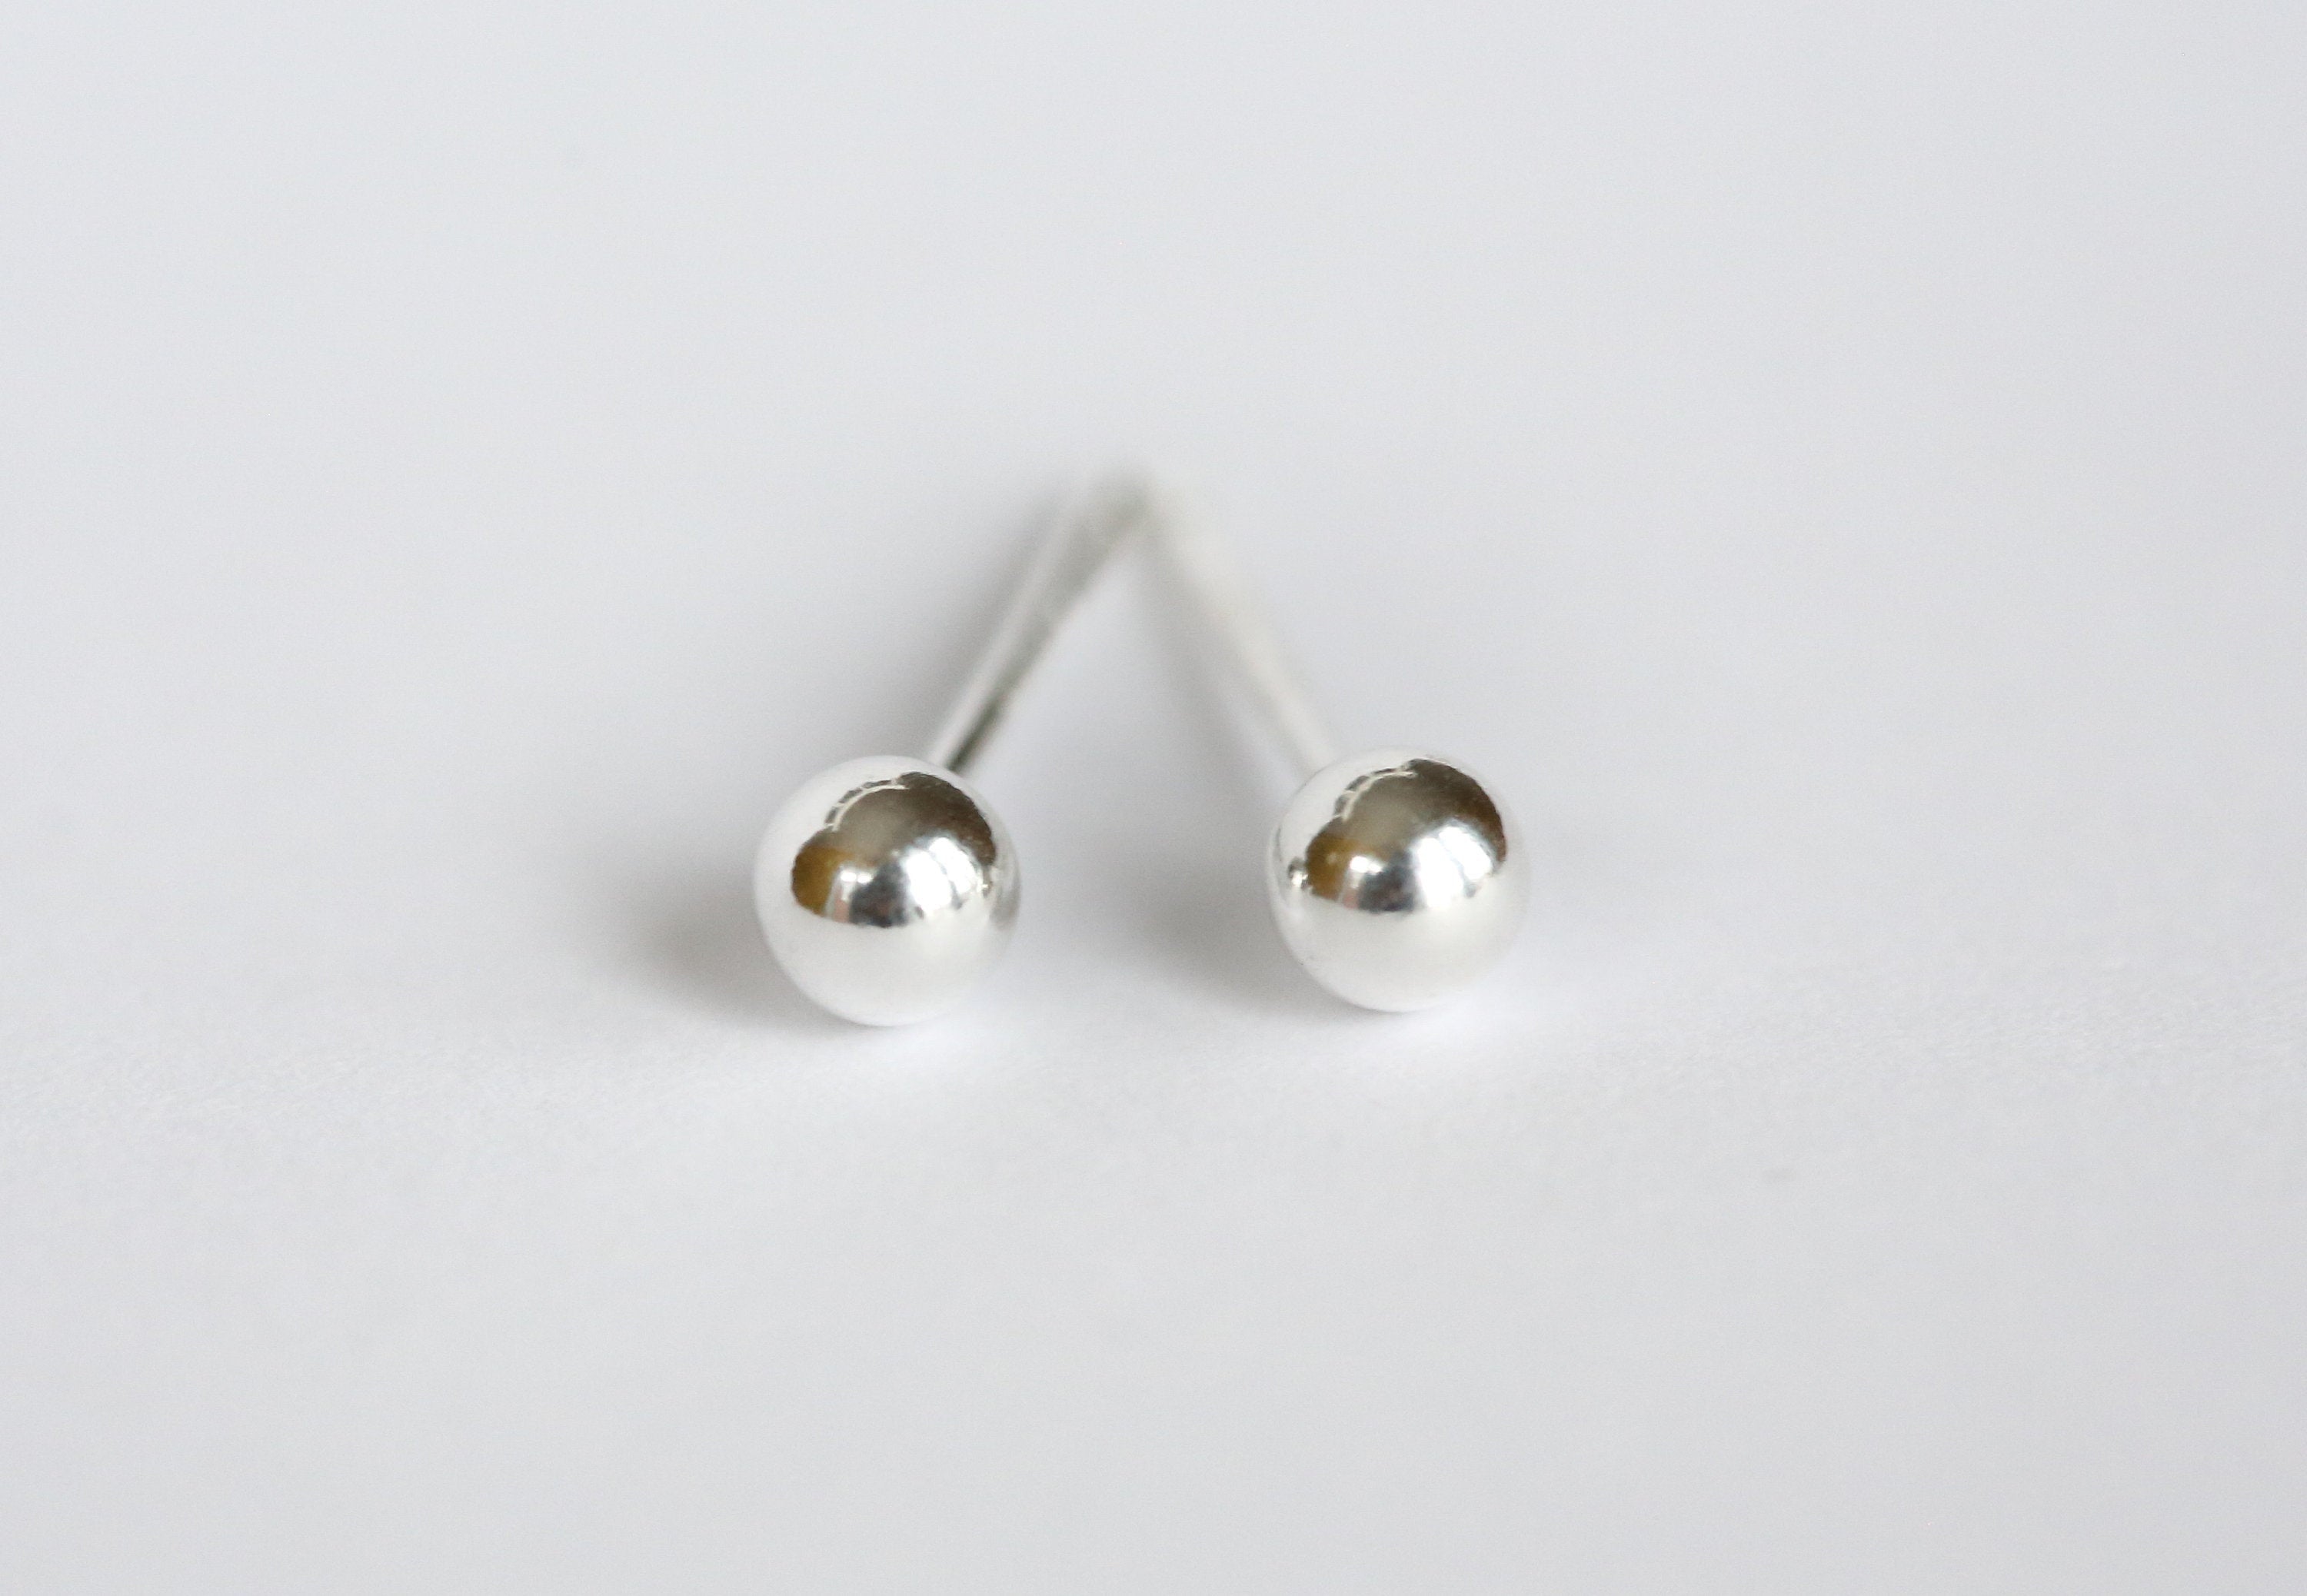 Ball silver earrings freeshipping - Ollijewelry